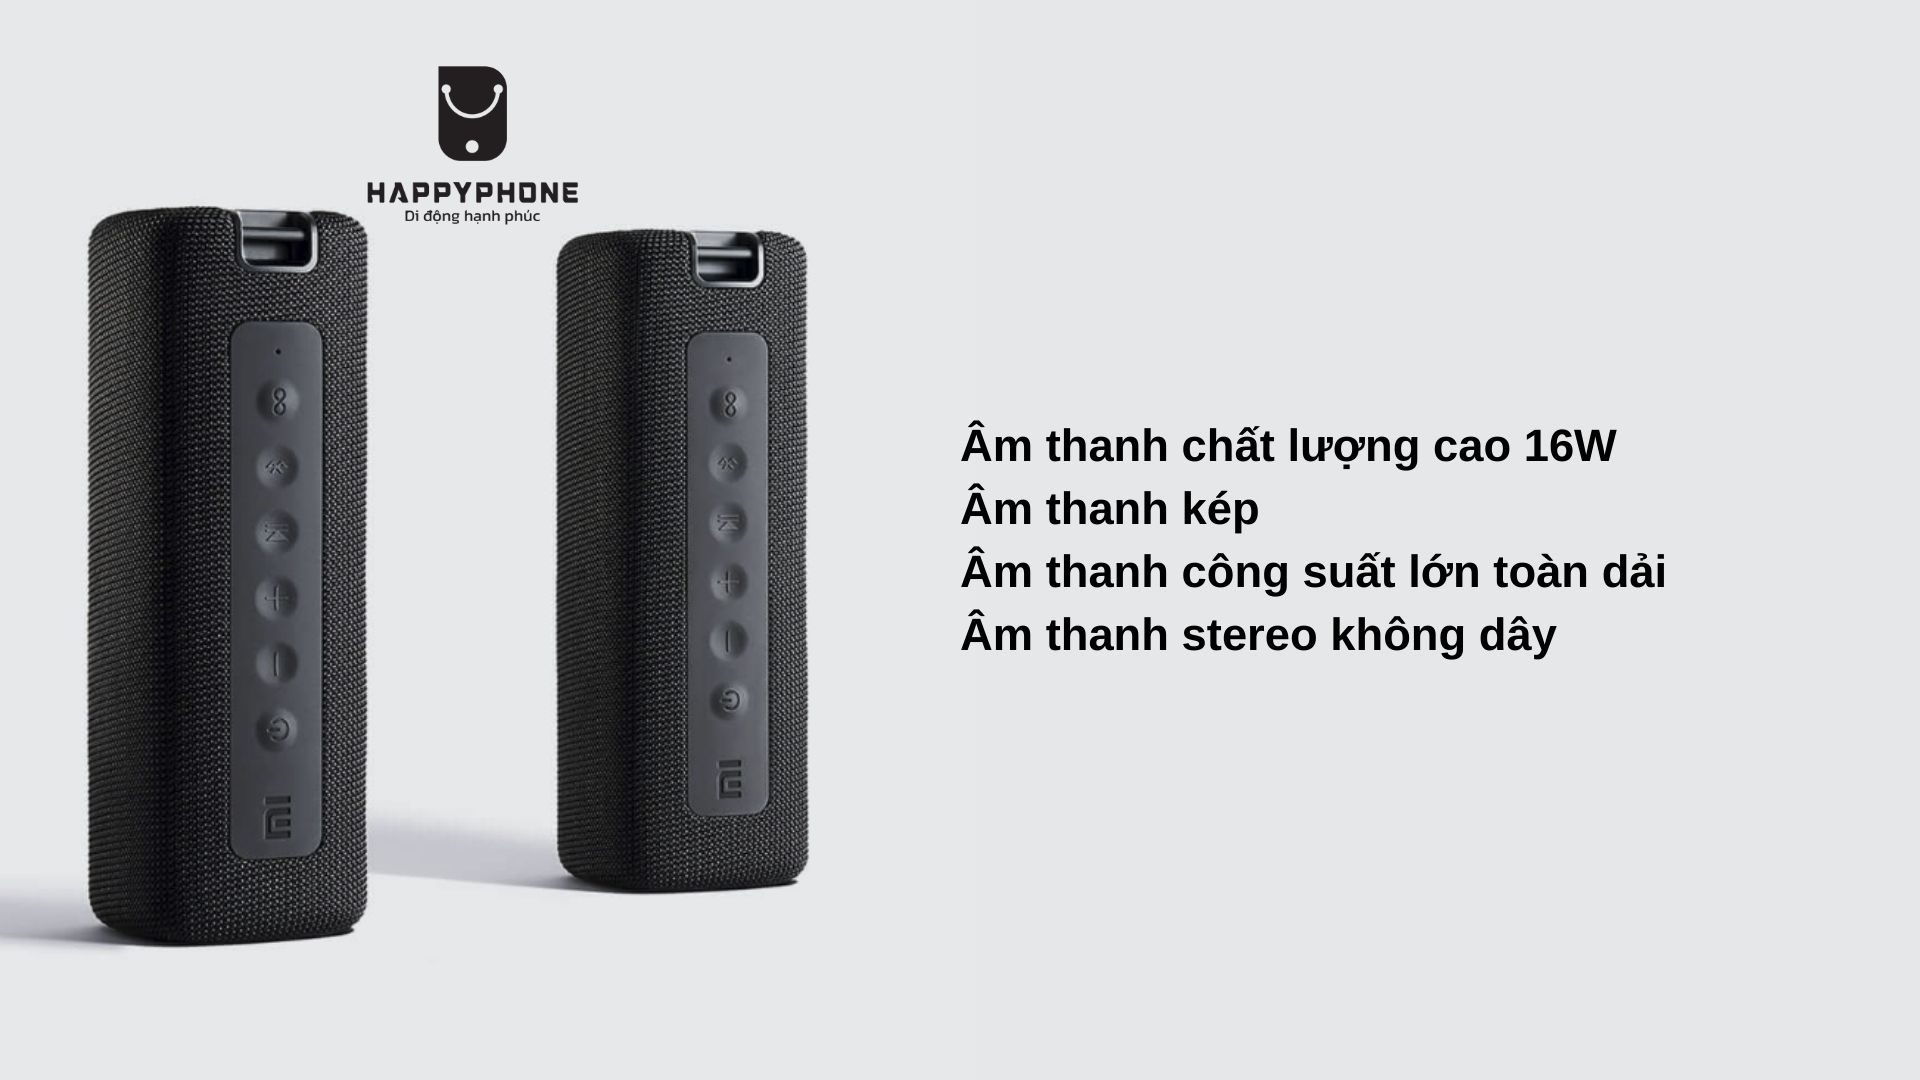 Mi Portable Bluetooth Speaker Âm thanh chất lượng cao 16 W, Các chế độ âm thanh kép, Âm thanh công suất lớn toàn dải, Âm thanh stereo không dây